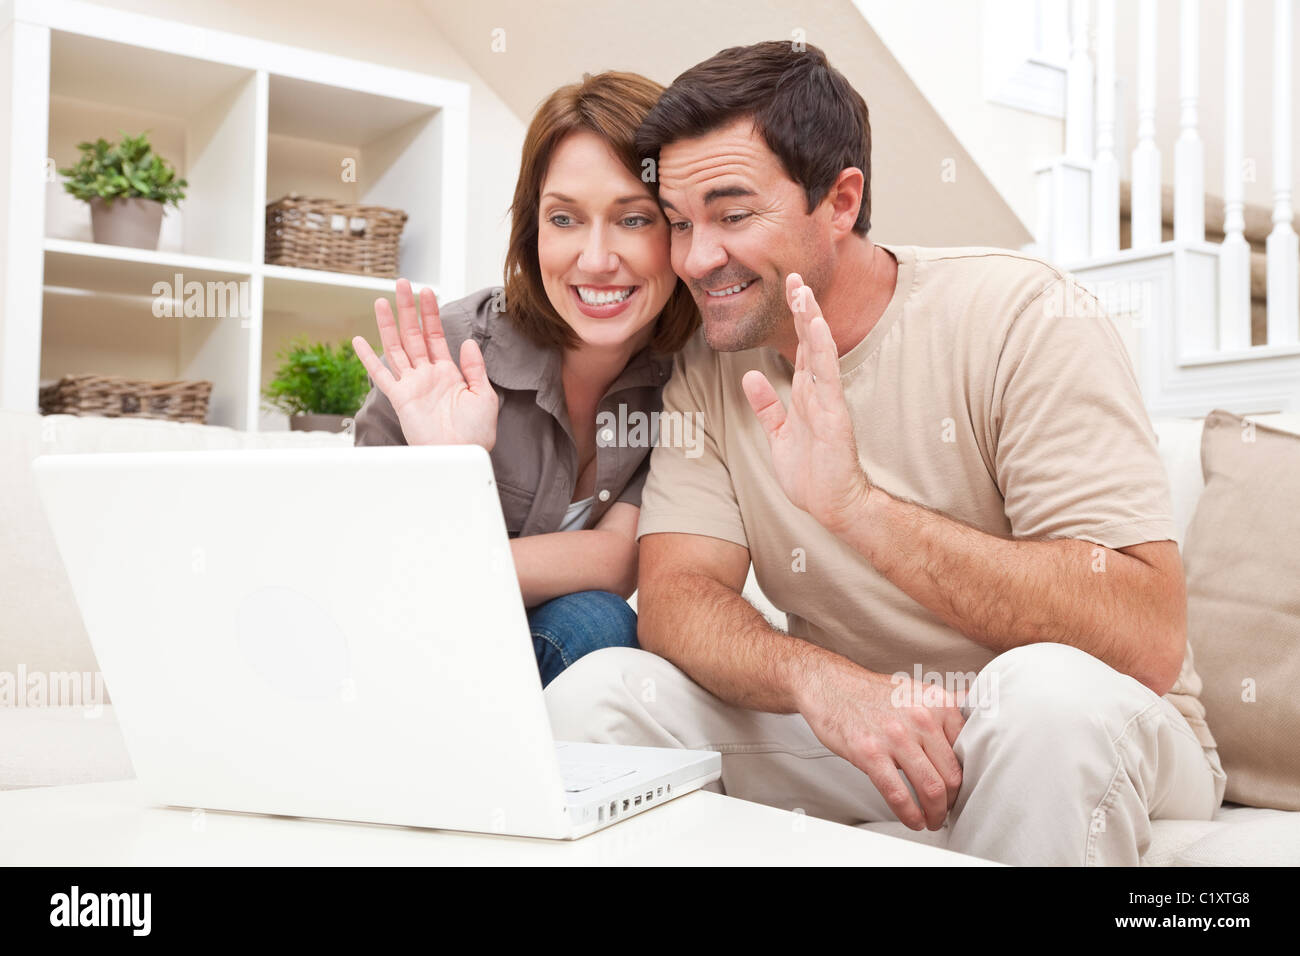 Felice l'uomo e la donna giovane, seduti insieme a casa su un divano con un computer portatile per effettuare una via internet con il servizio VOIP chiamata telefonica Foto Stock